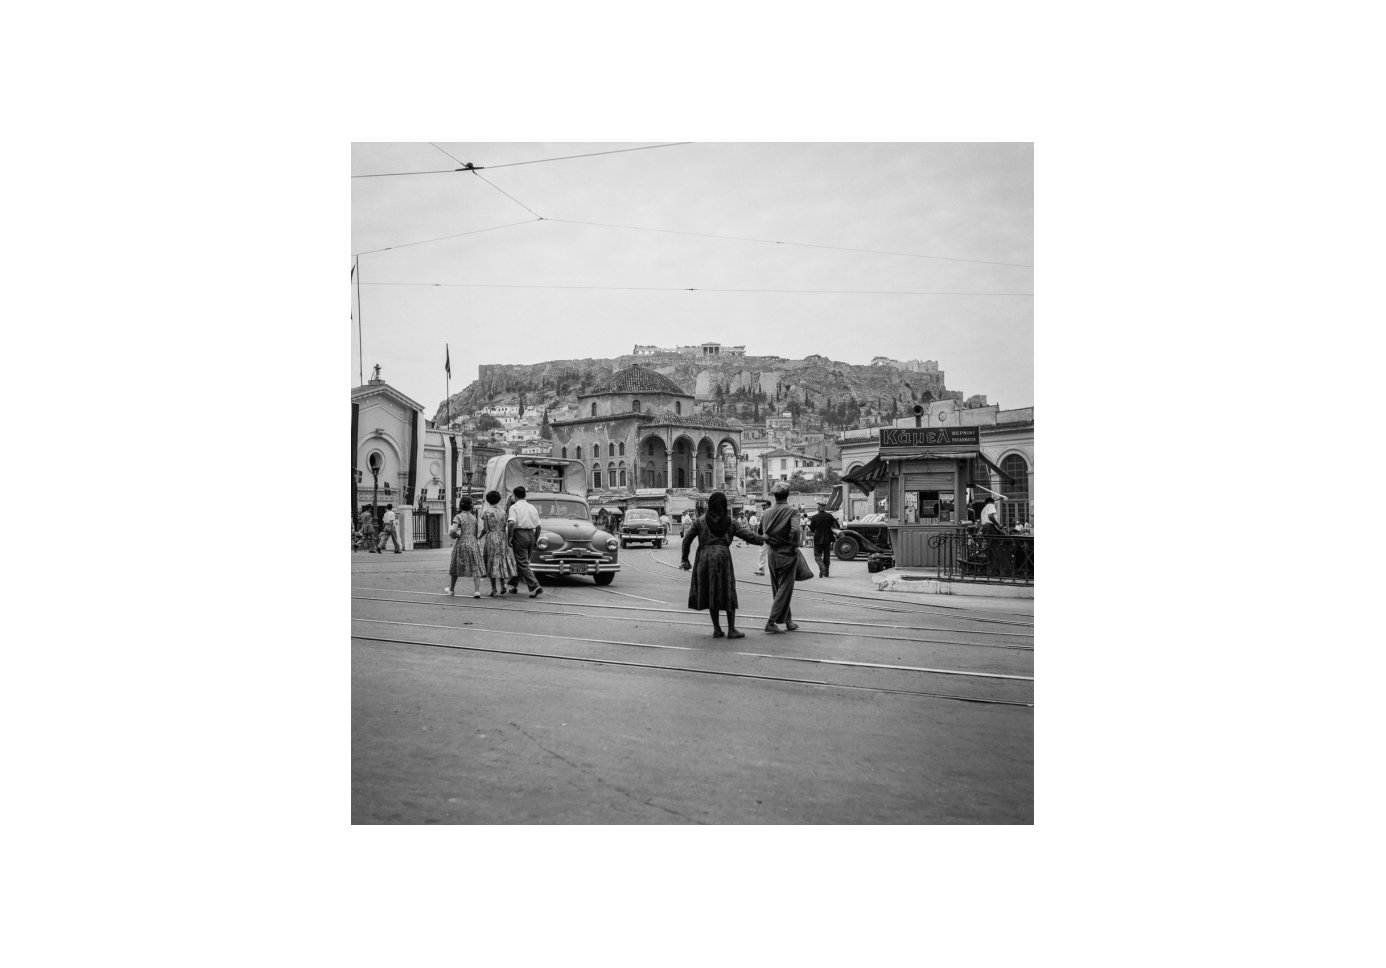 Monastiraki square in Athens in the 1950s, taken by Robert McCabe. 